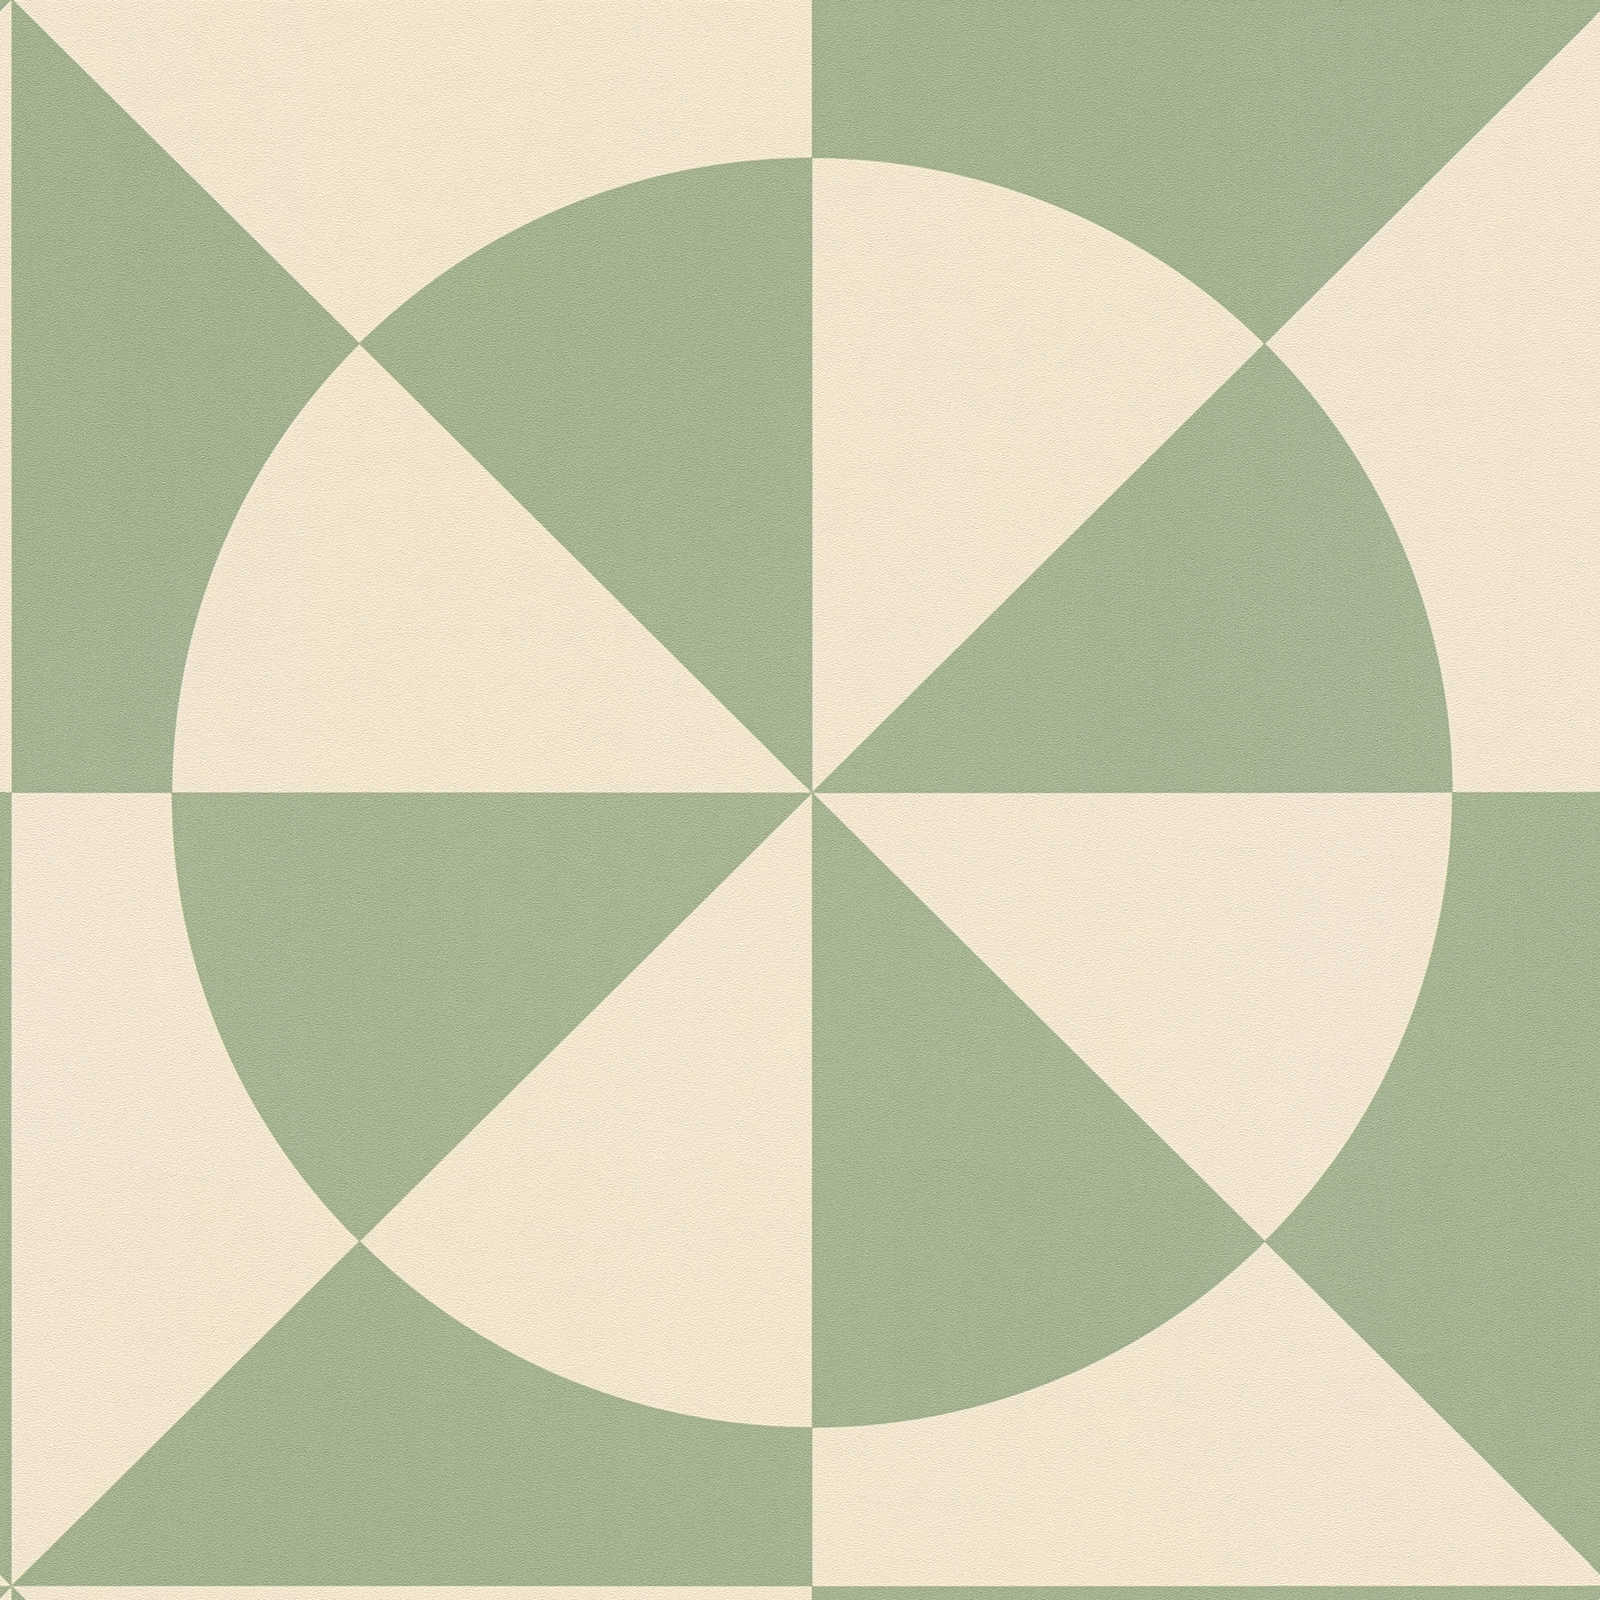             Vliesbehang met cirkelmotief & geometrische vormen - beige, groen
        